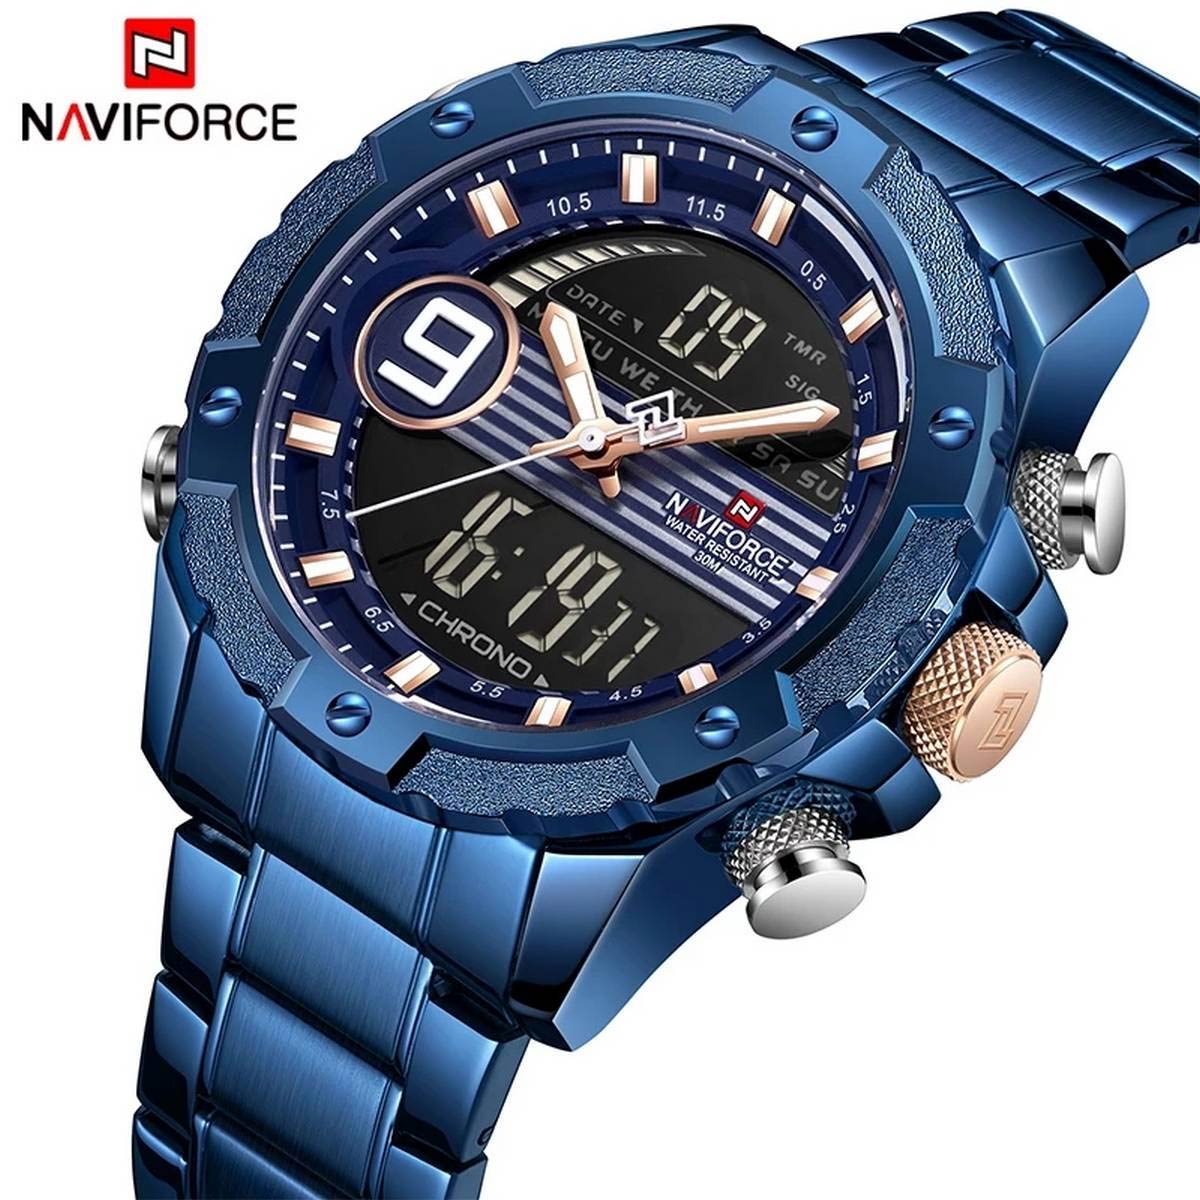 NaviForce NF9146 mens analog digital watch